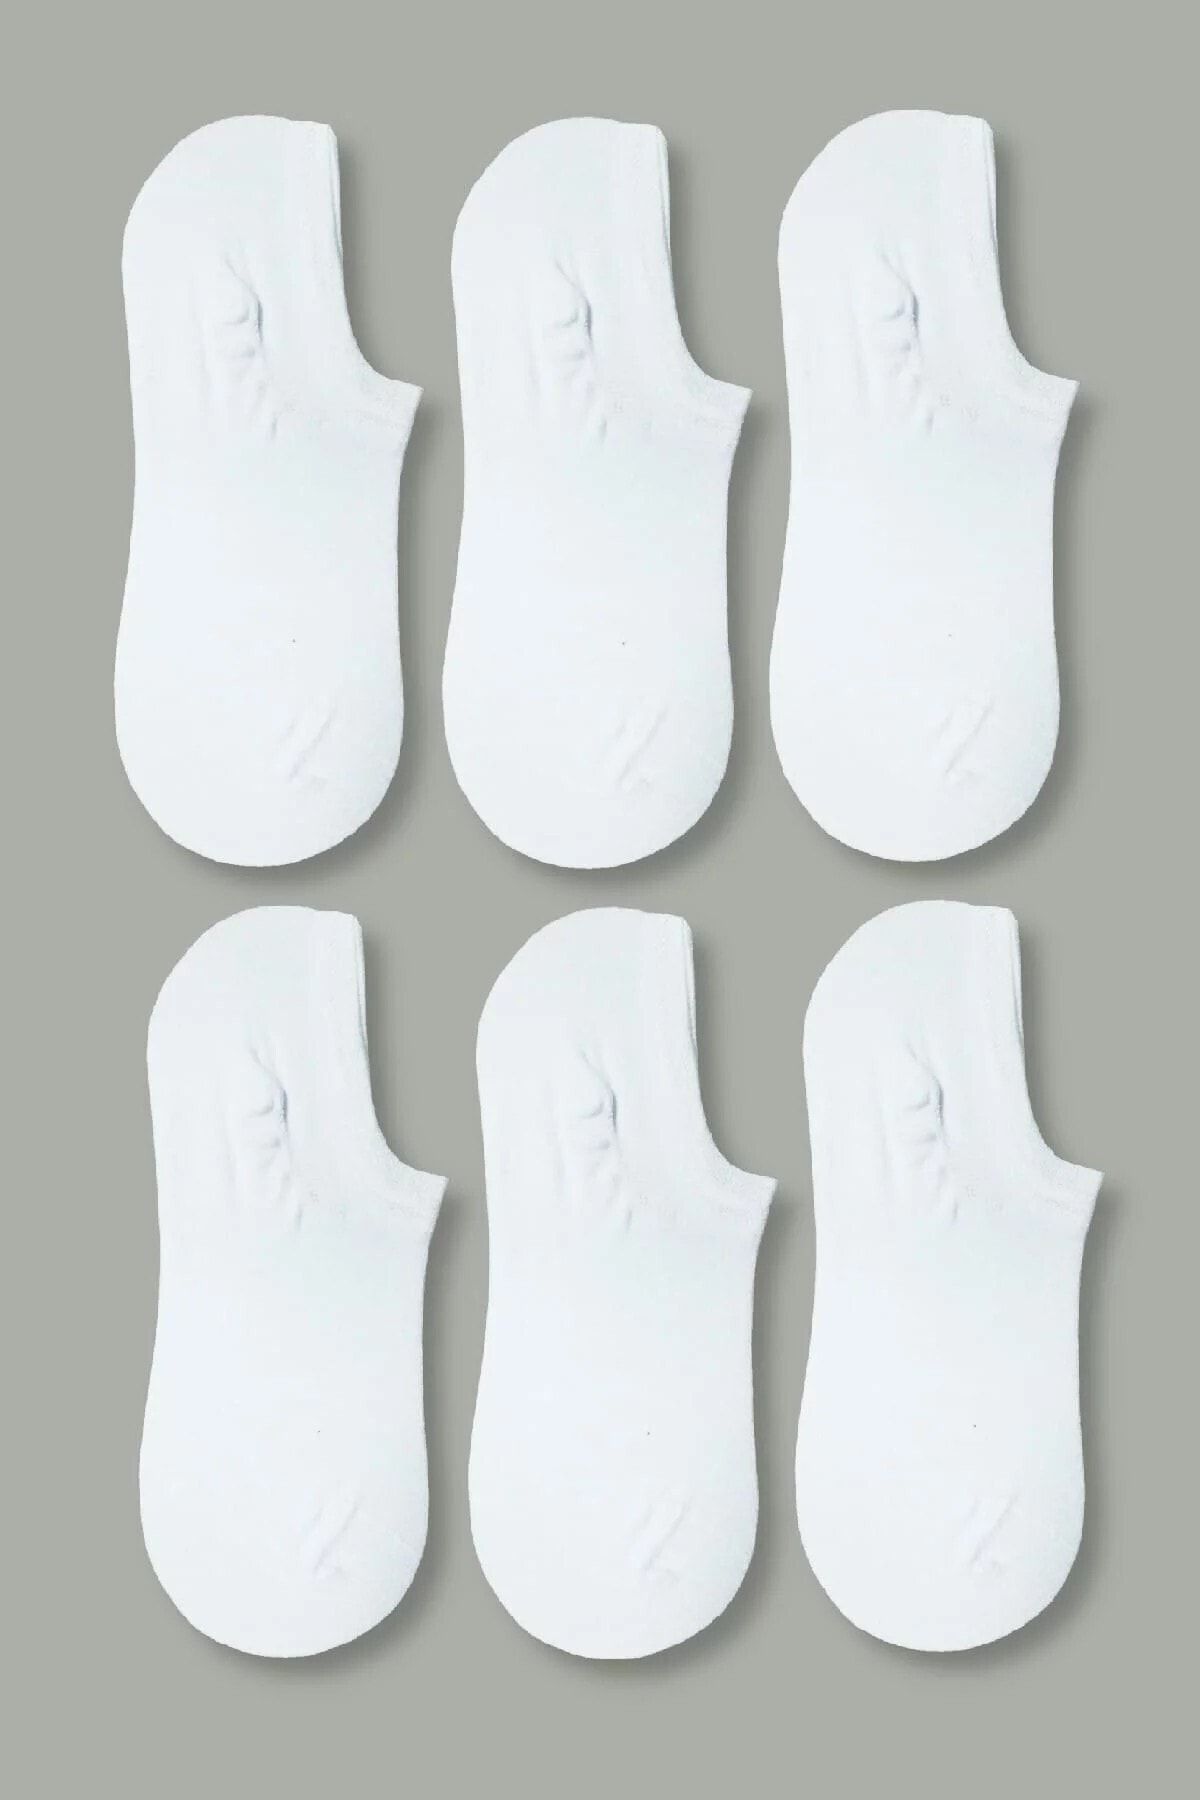 socksbox Kadın Beyaz 6 Çift Ekonomik Bambu Görünmez Sneakers Çorap